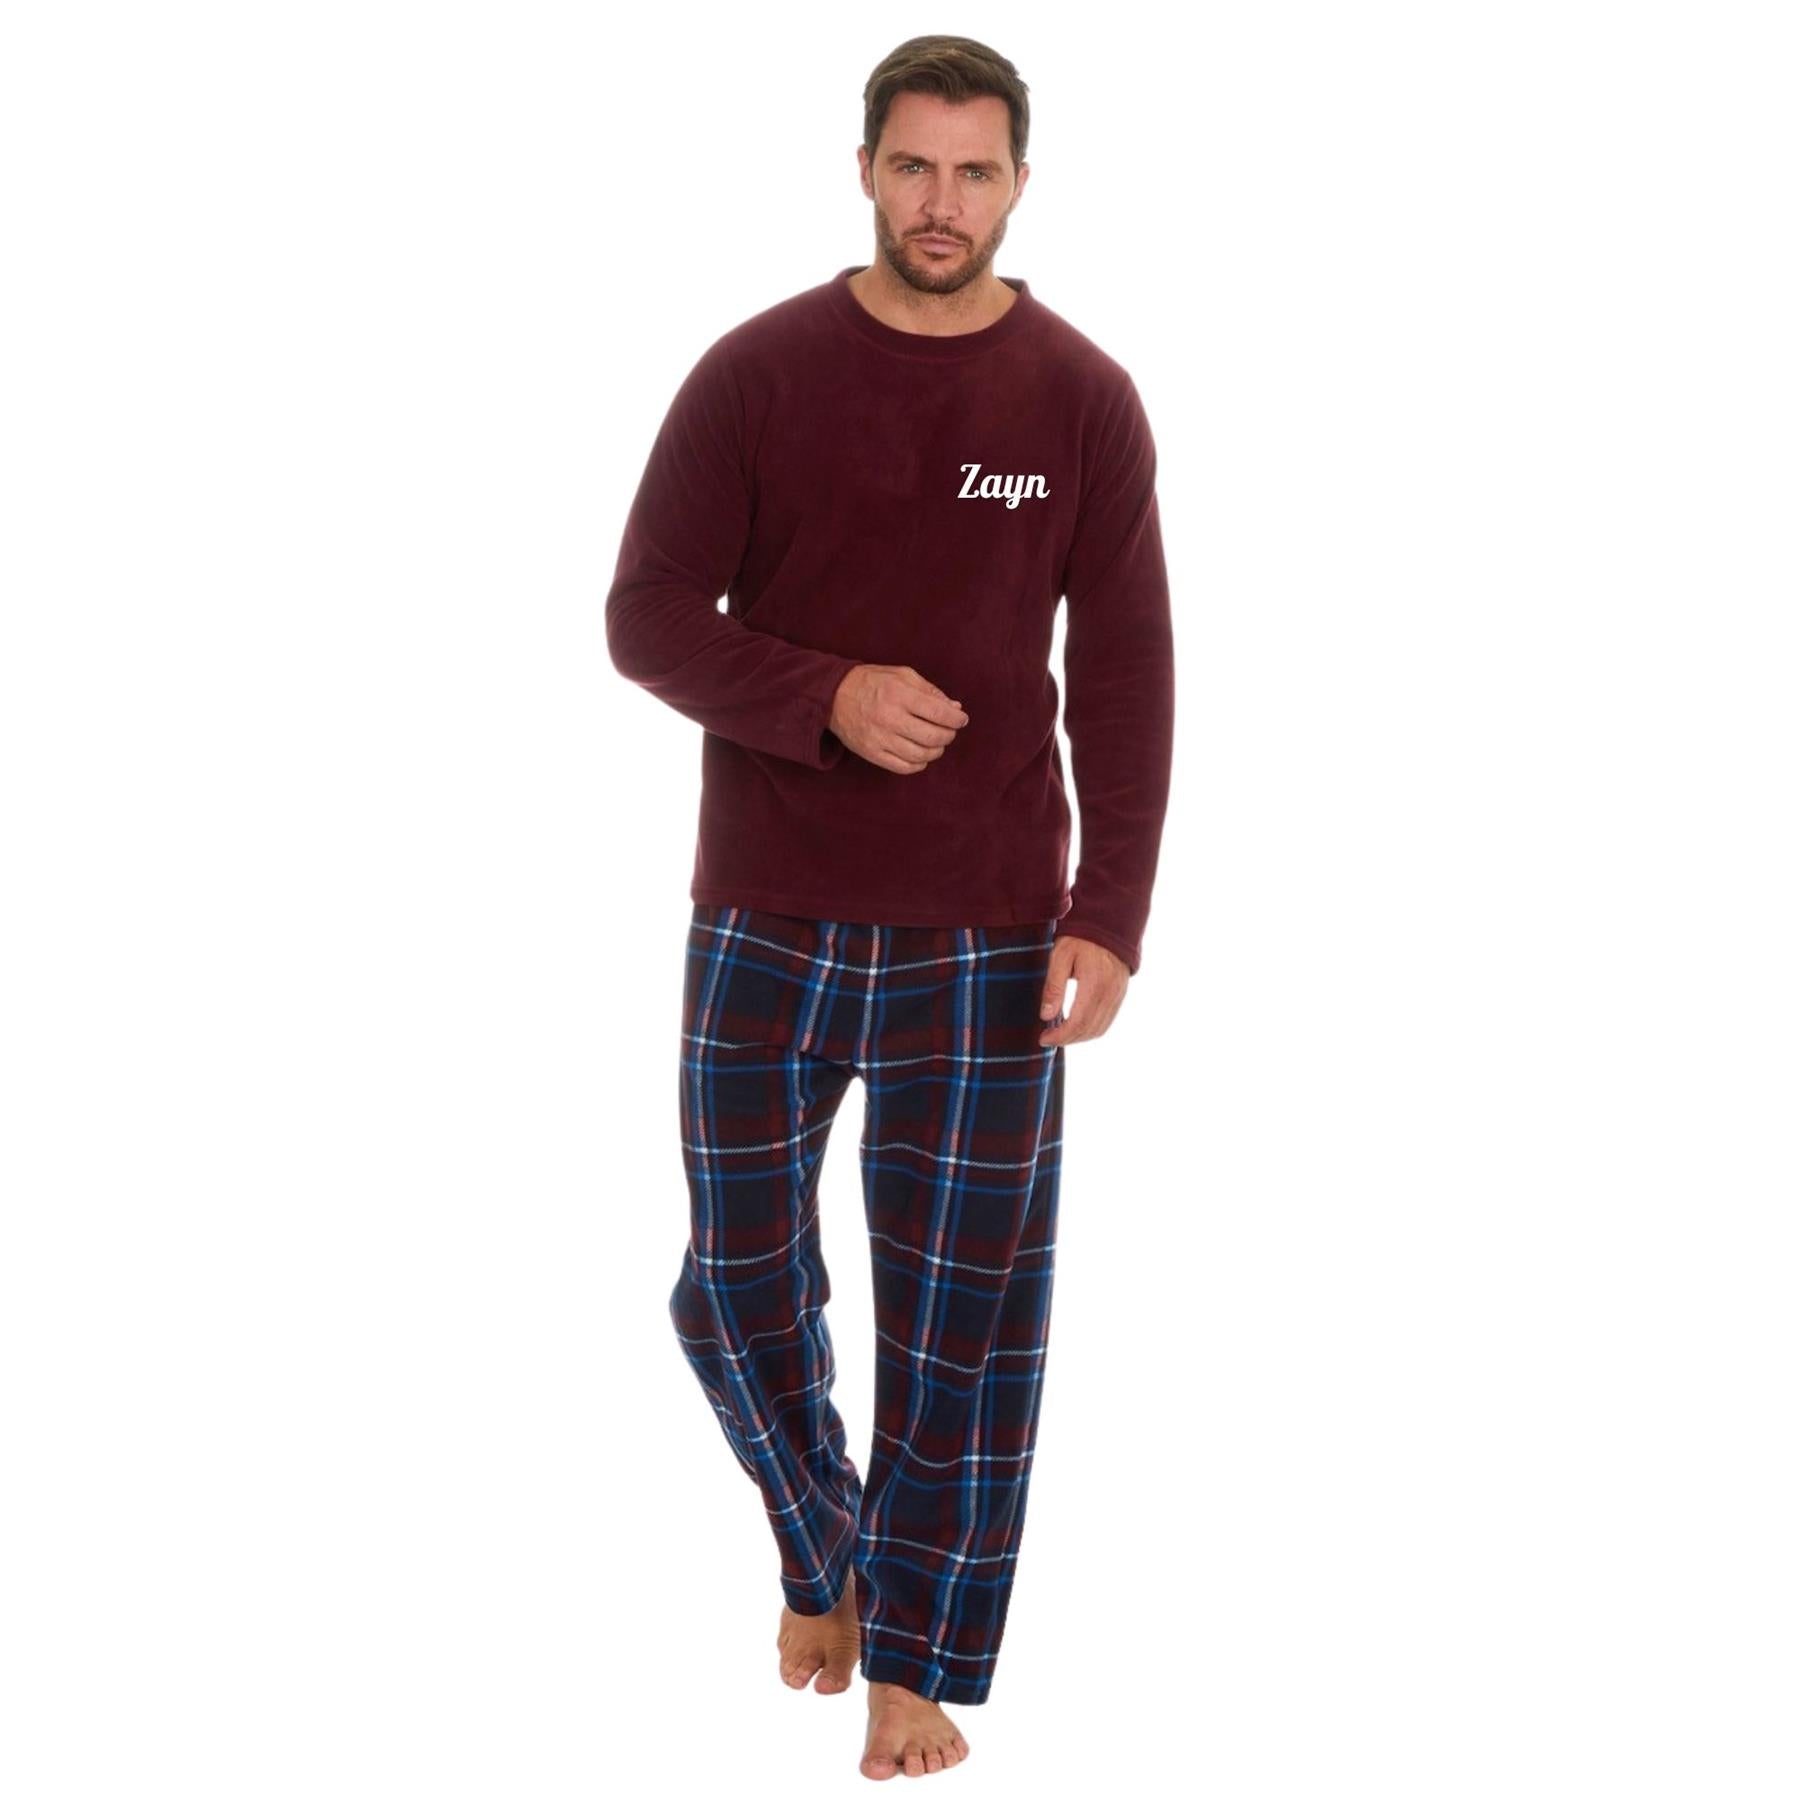 Charcoal Fleece Pyjamas